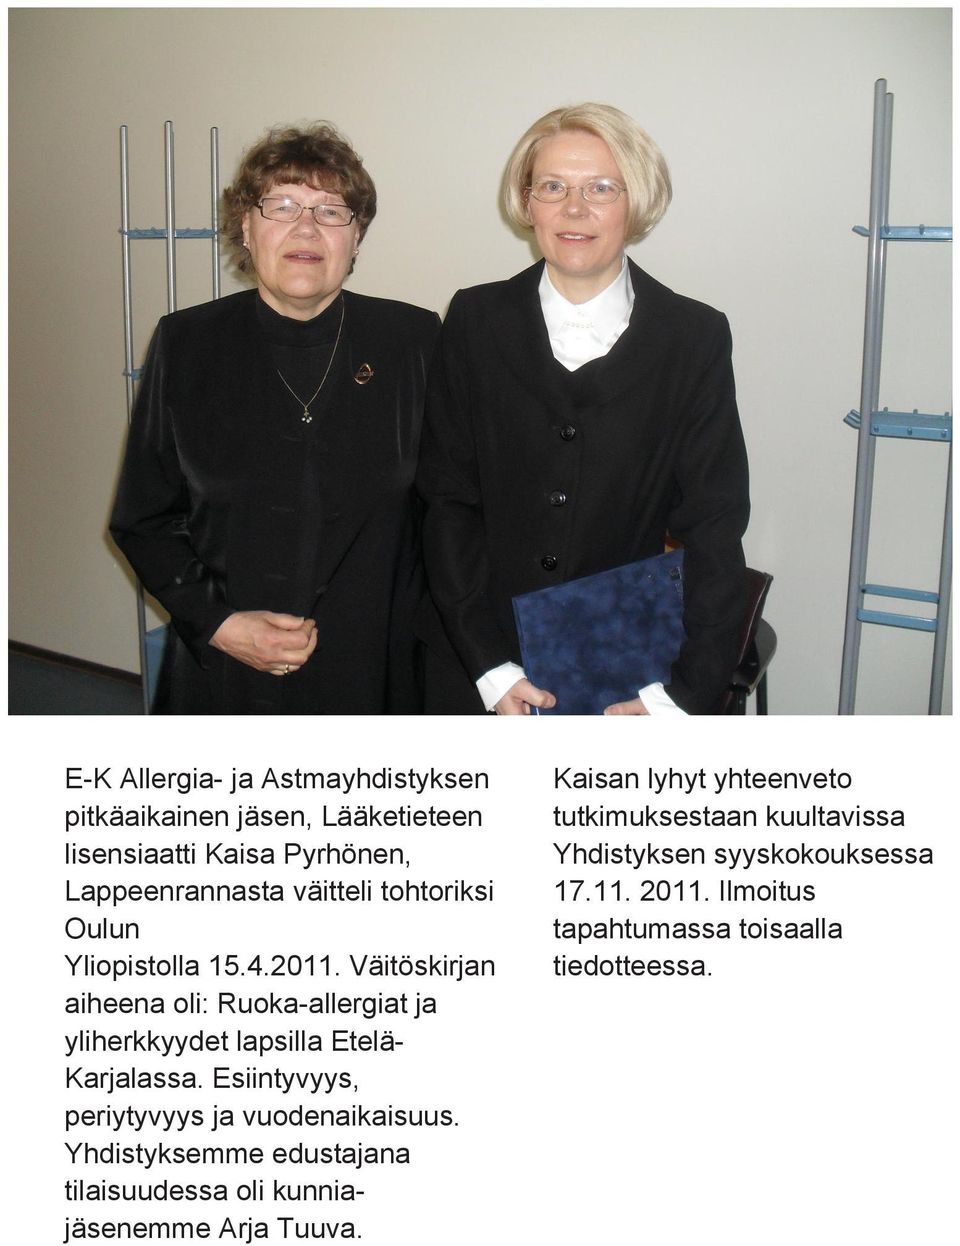 Väitöskirjan aiheena oli: Ruoka-allergiat ja yliherkkyydet lapsilla Etelä- Karjalassa.